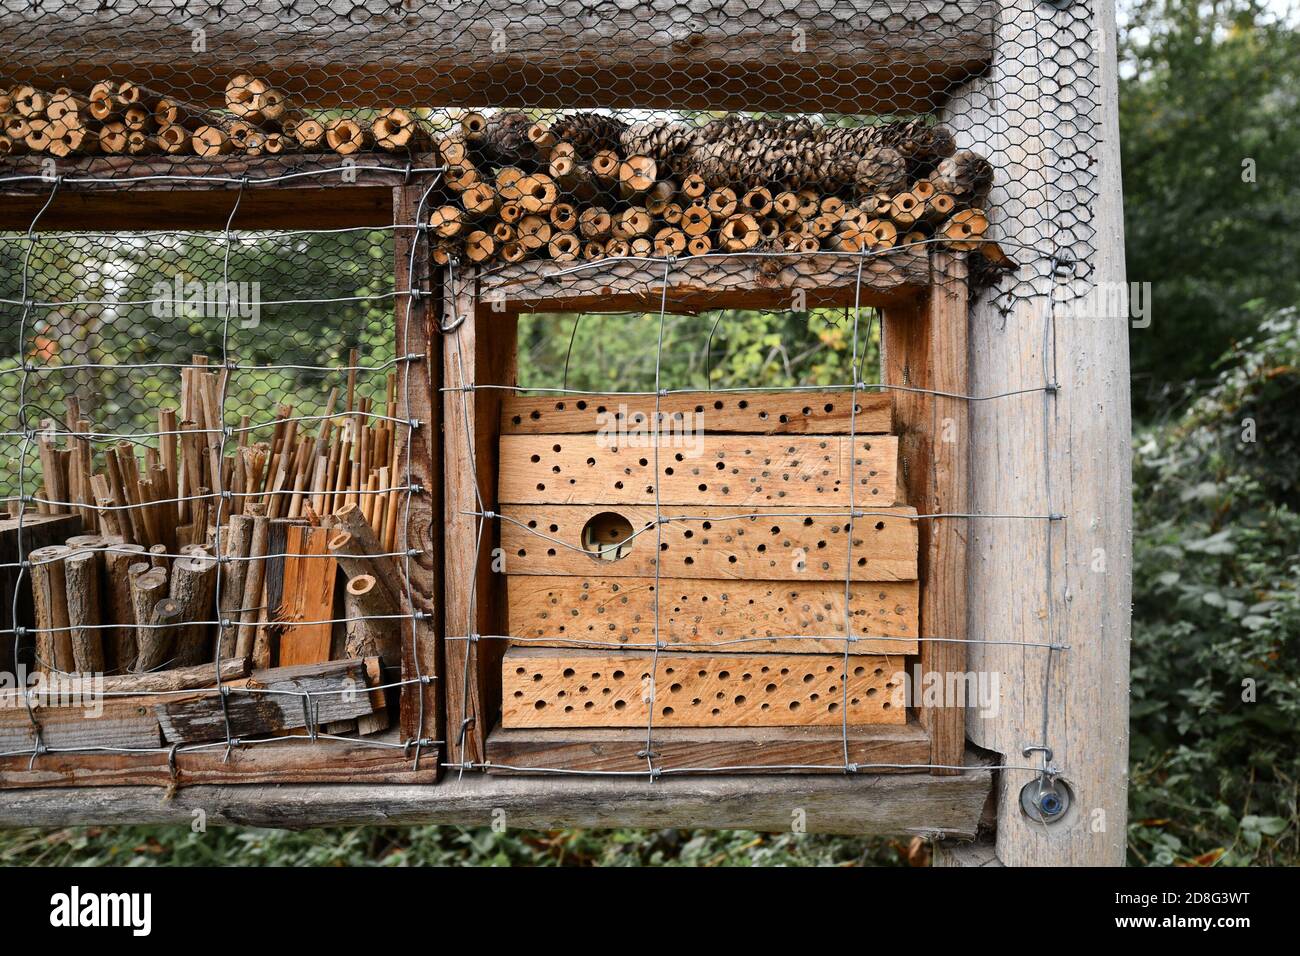 Détail d'une partie de la structure d'hôtel de maison d'insectes de bois naturel créé pour fournir un abri pour les insectes pour empêcher leur extinction Banque D'Images